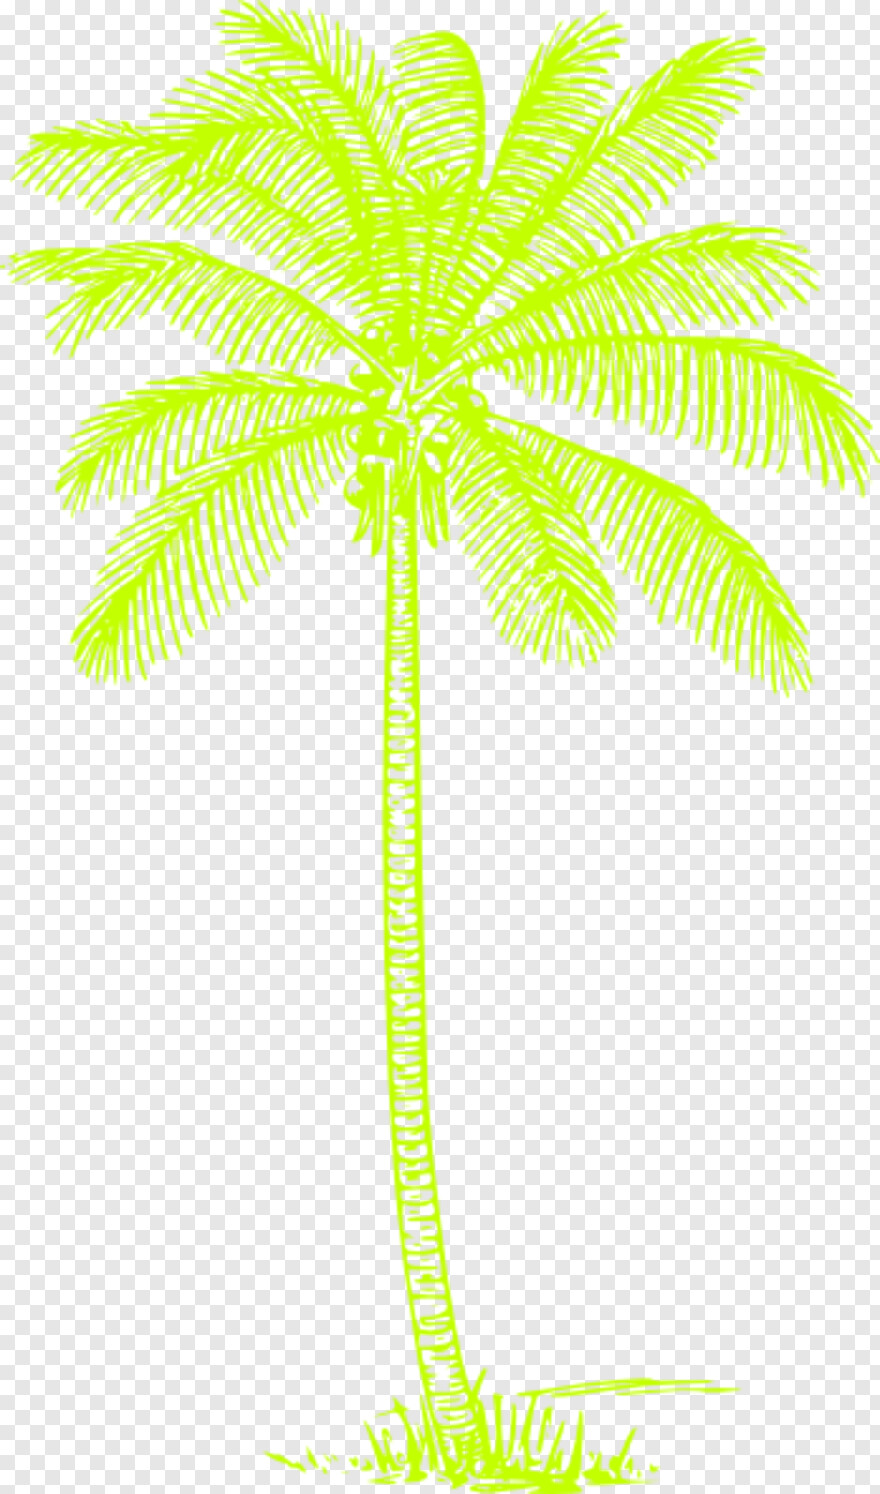 palm-tree-silhouette # 477313